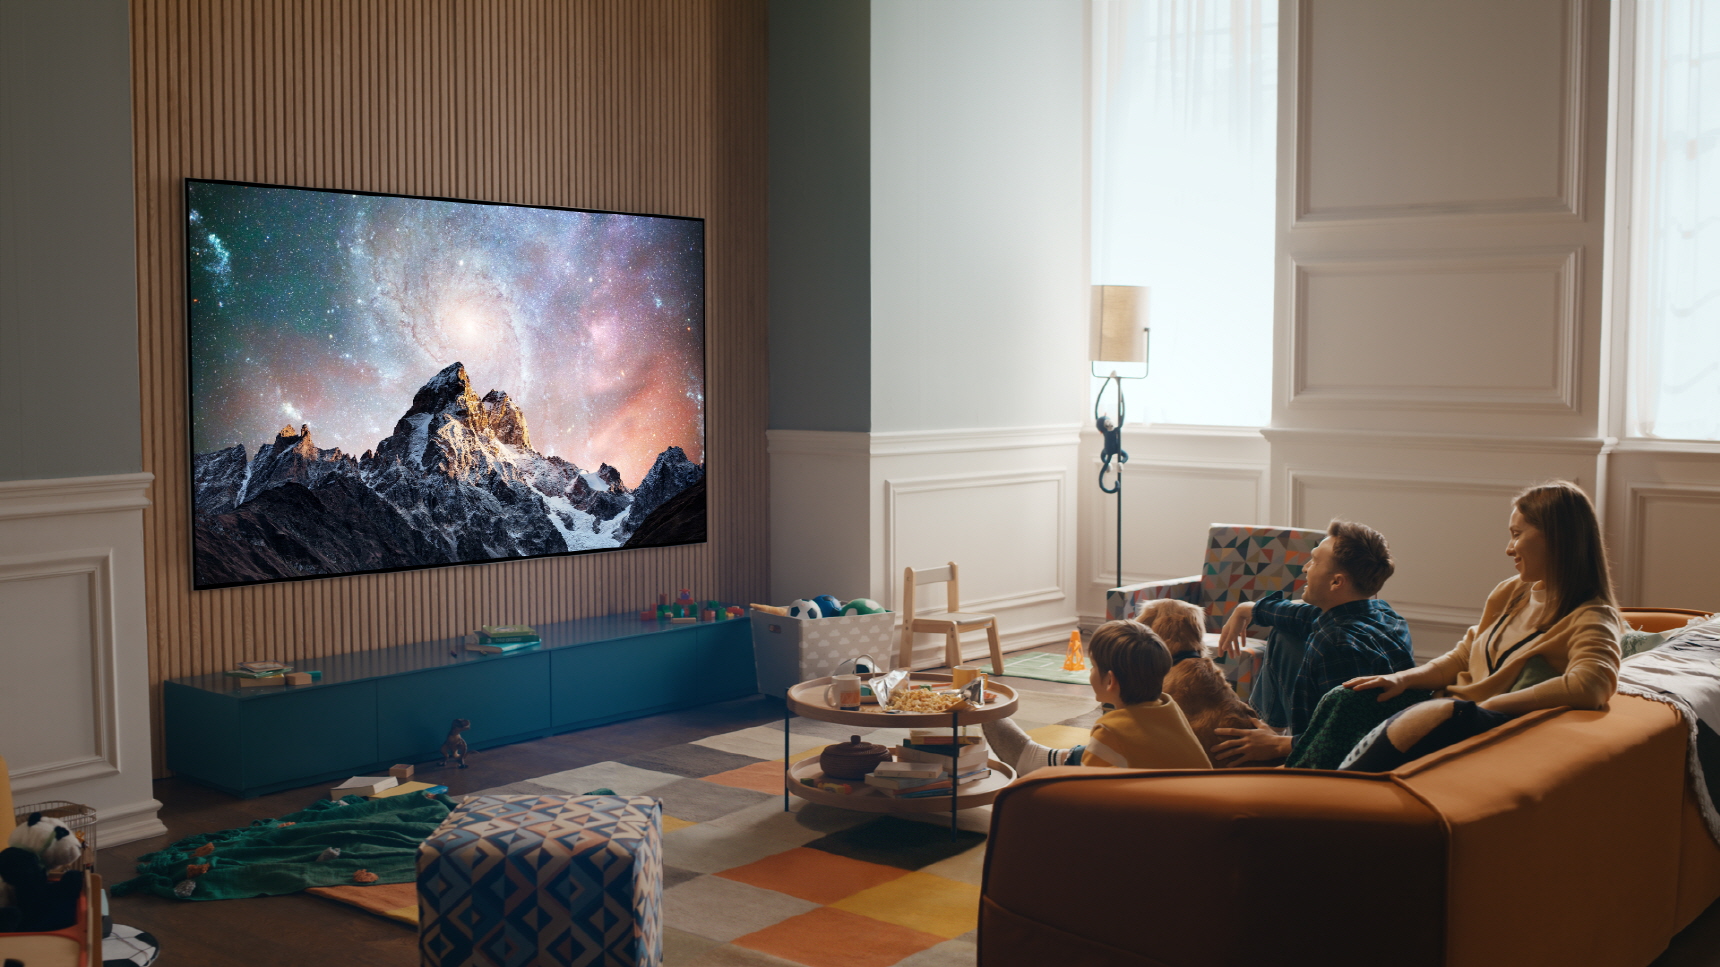 LG OLED evo Fernseher: Fernseher in schöner Wohnung mit Familie